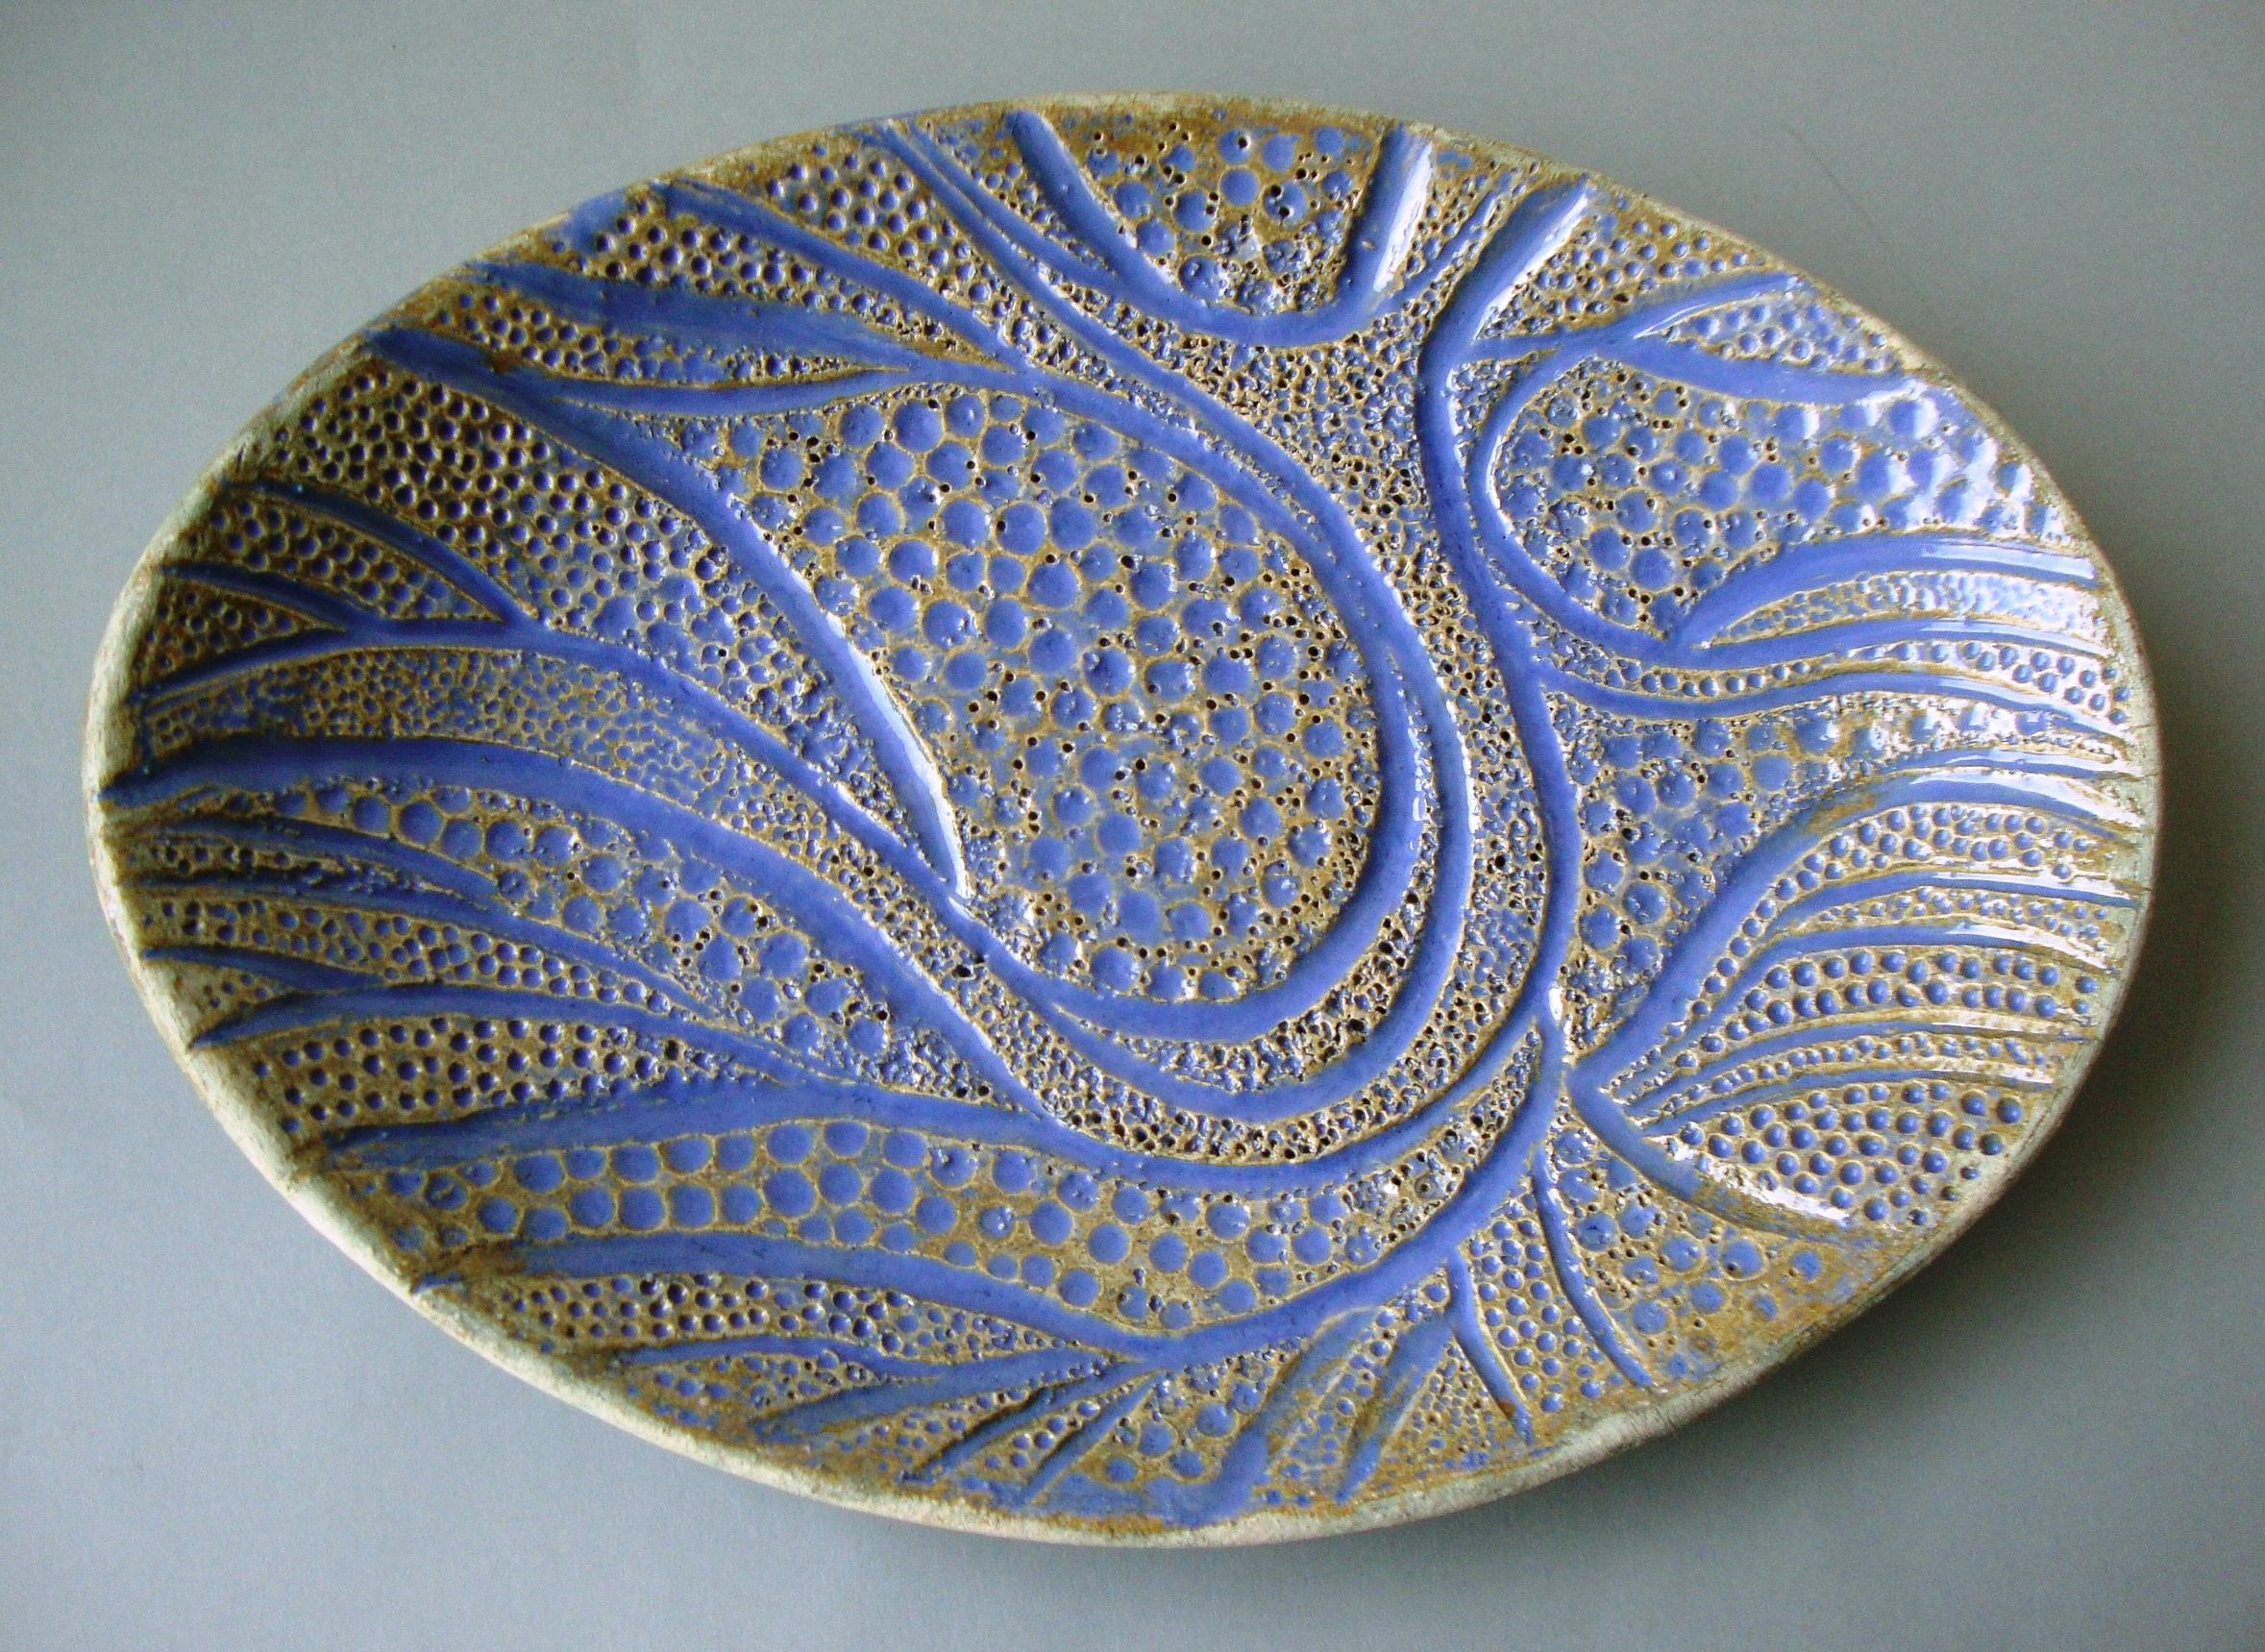 Bol ovale avec motif d'arbre. 2013, grès, 3,5x26x18,5 cm